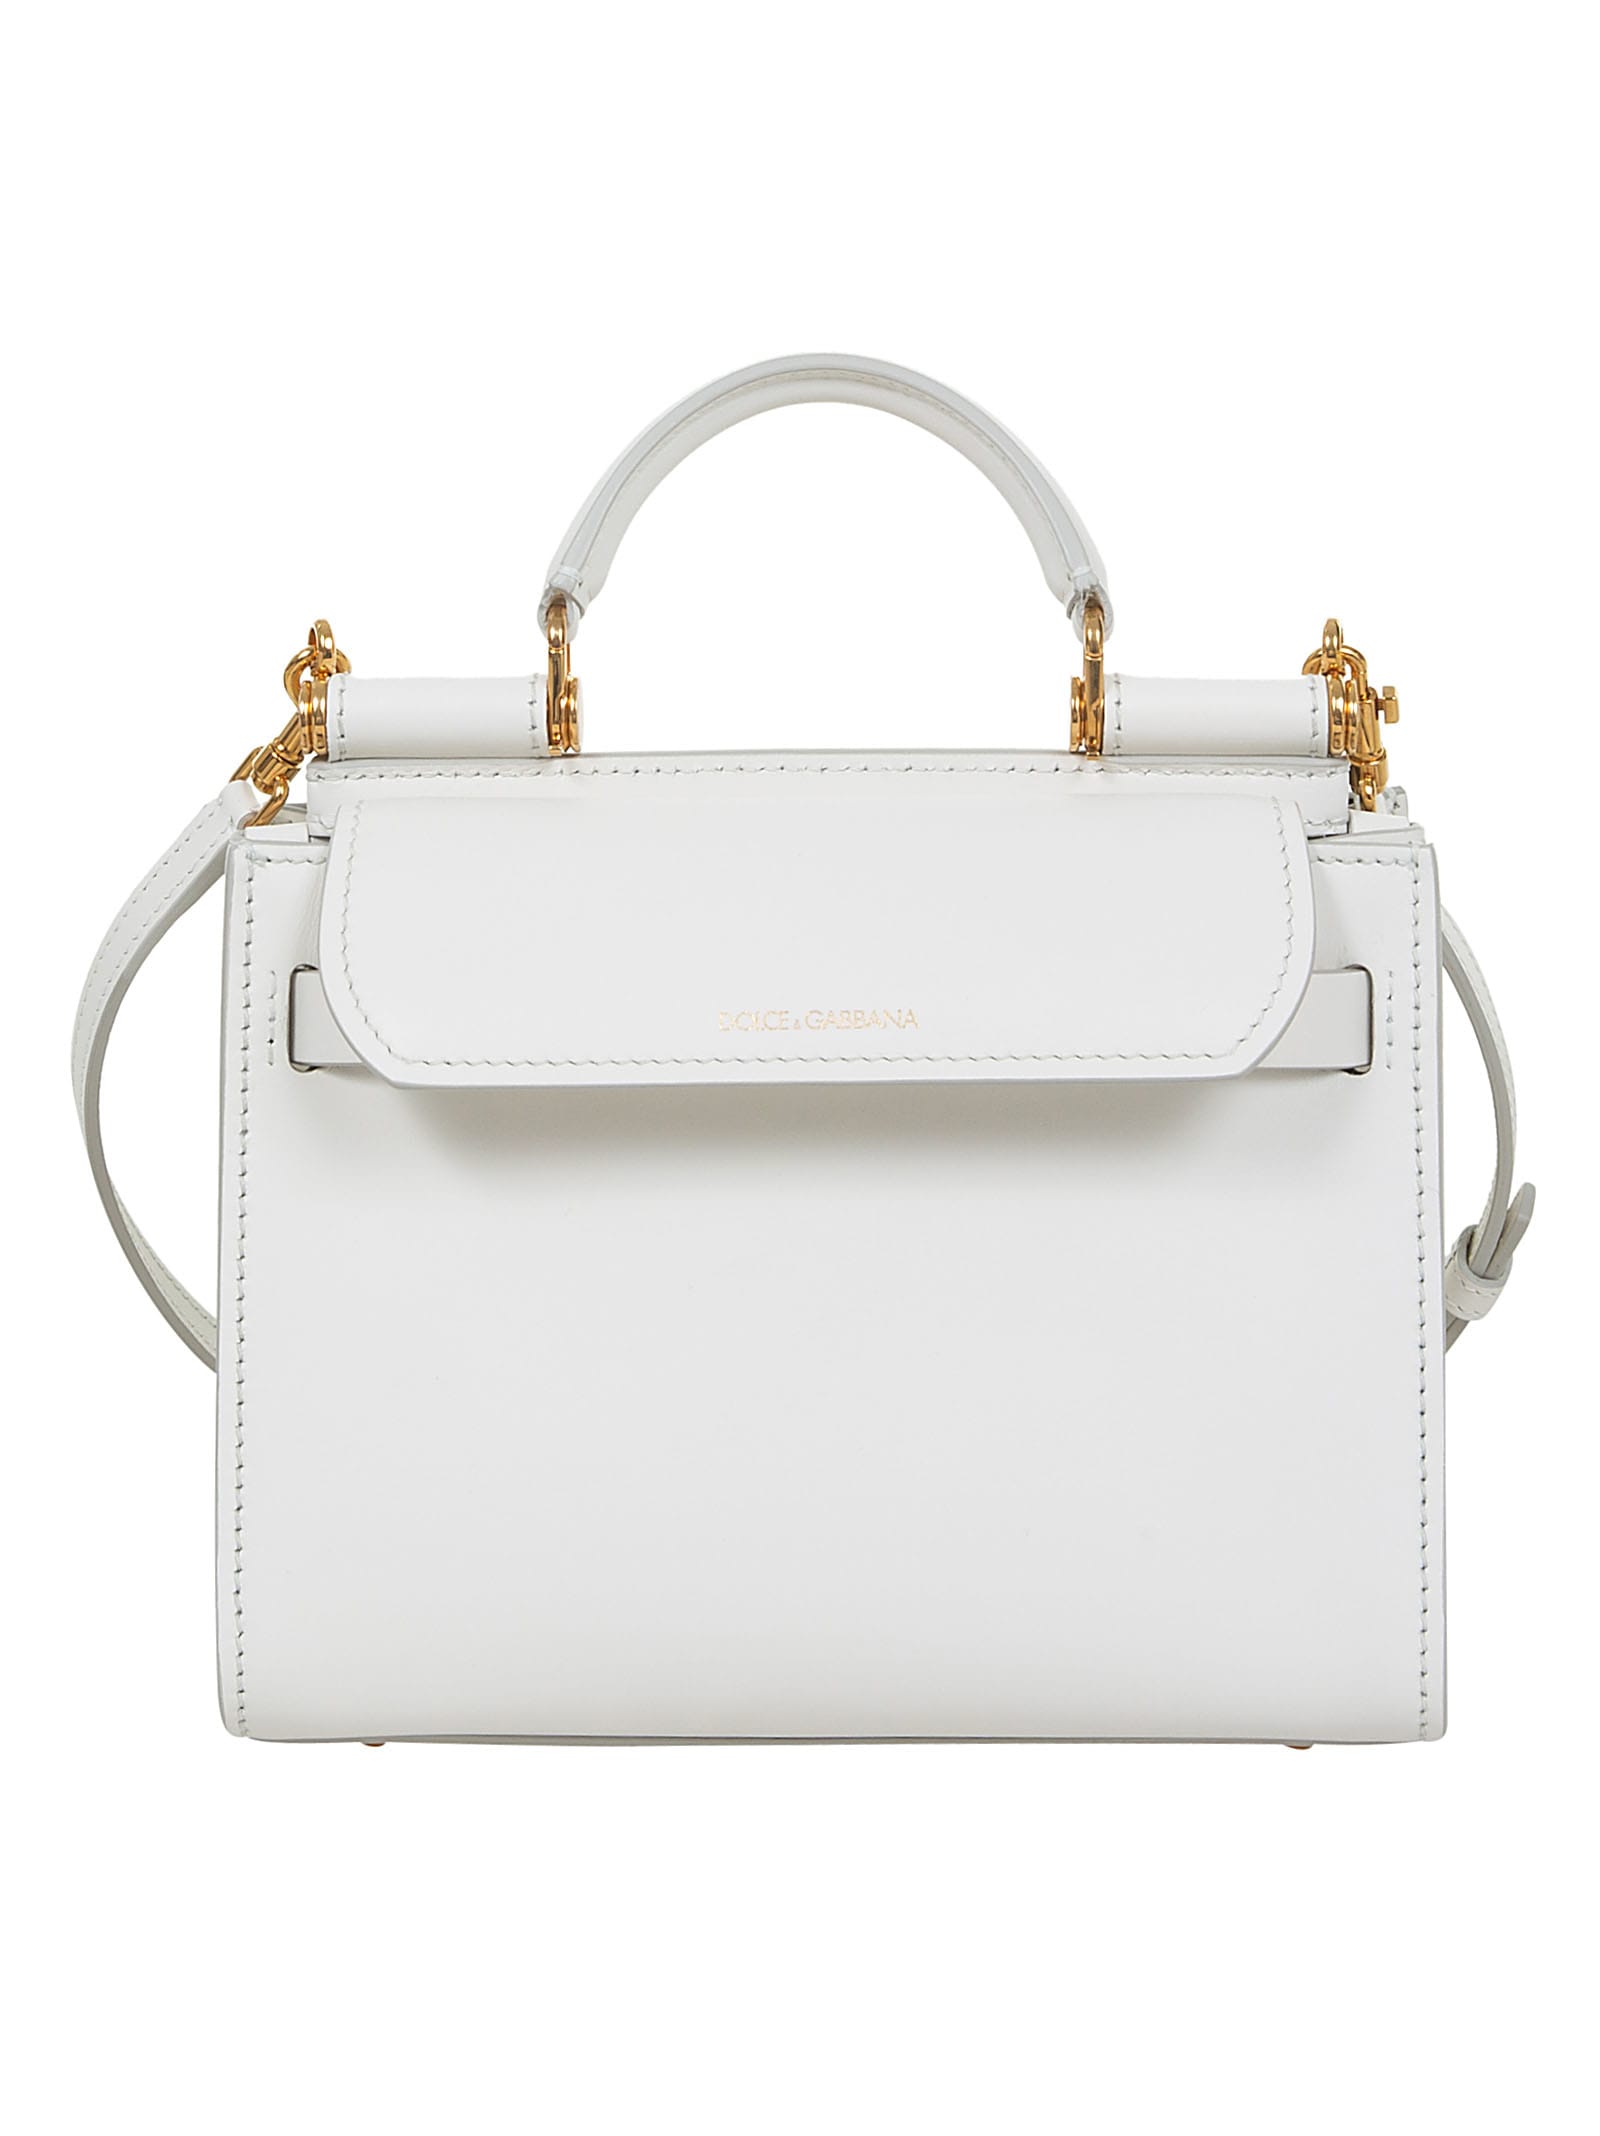 Dolce & Gabbana Logo Plaque Shoulder Bag In White/gold